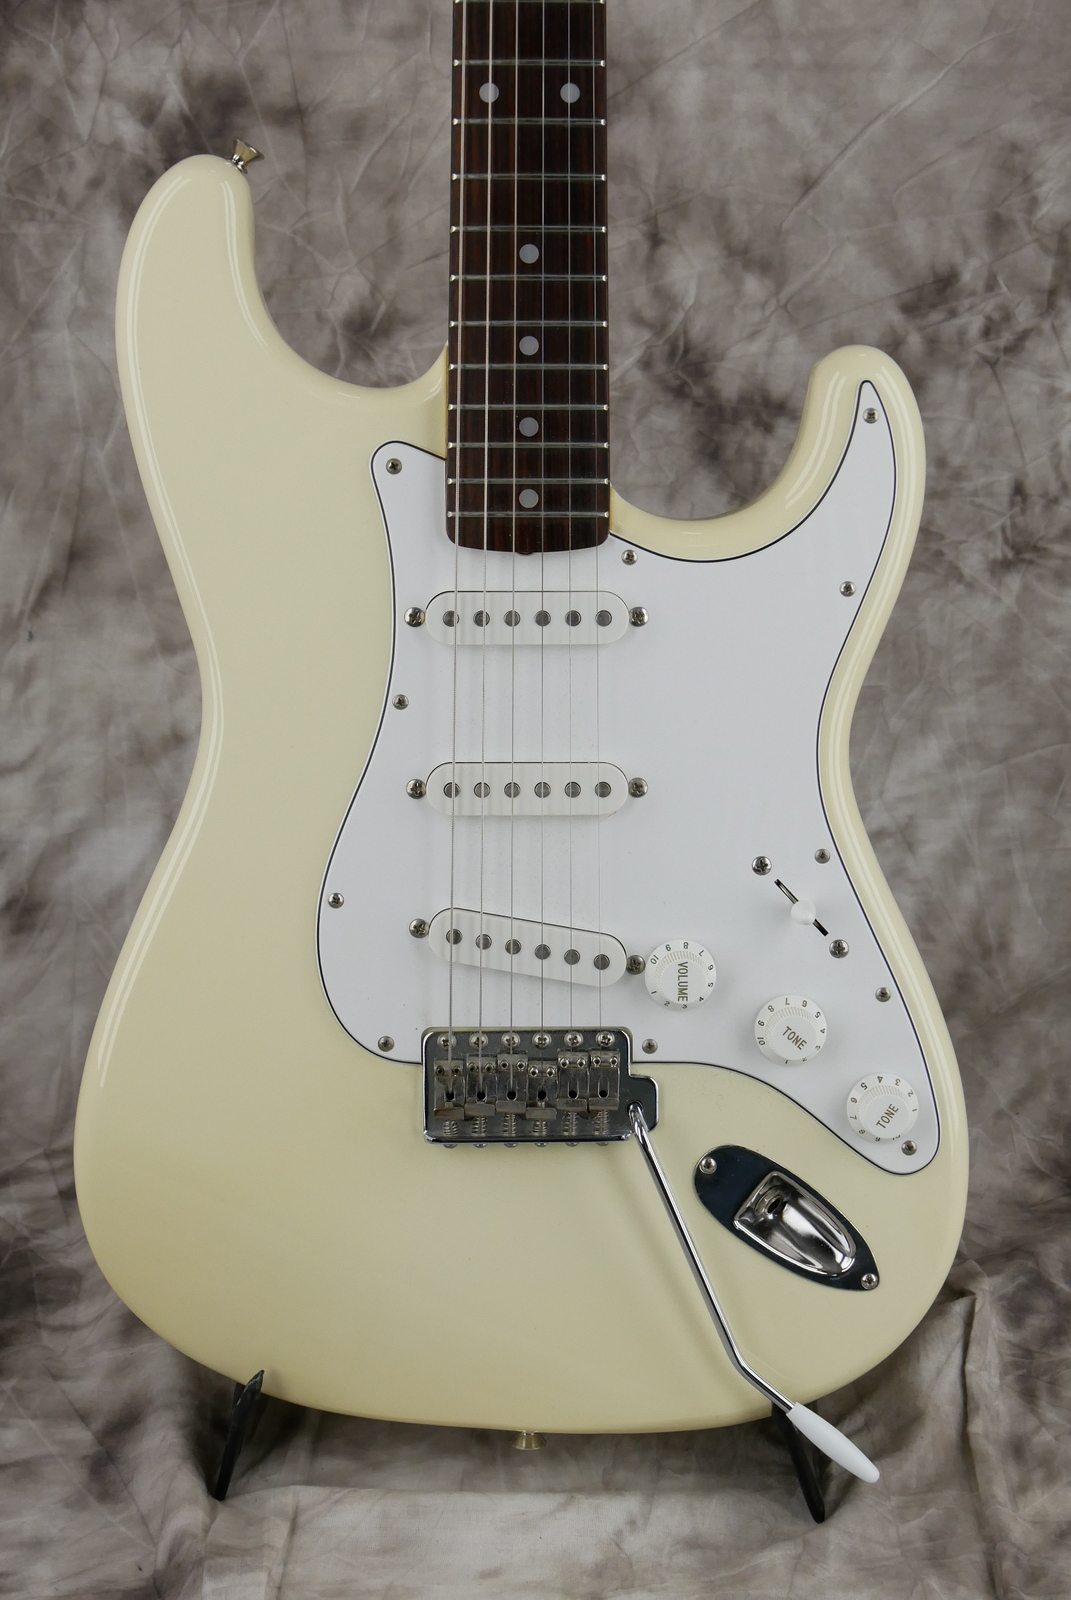 Fender_Stratocaster_Squier_series_Japan_olympic_white_1993-003.JPG